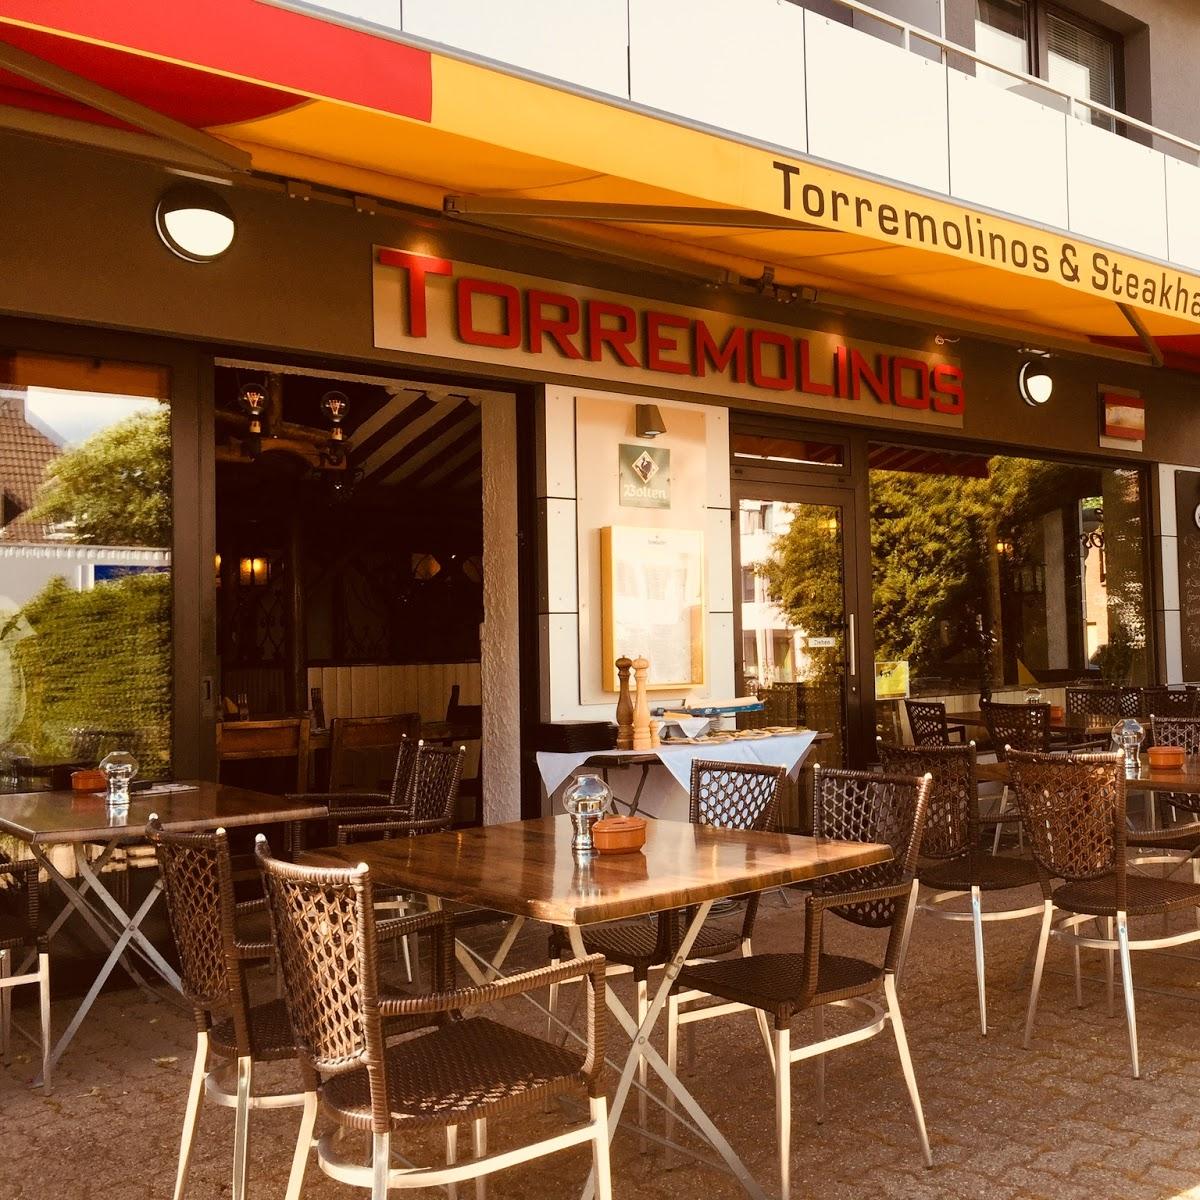 TORREMOLINOS Spanisches Restaurant & Steakhaus in Meerbusch